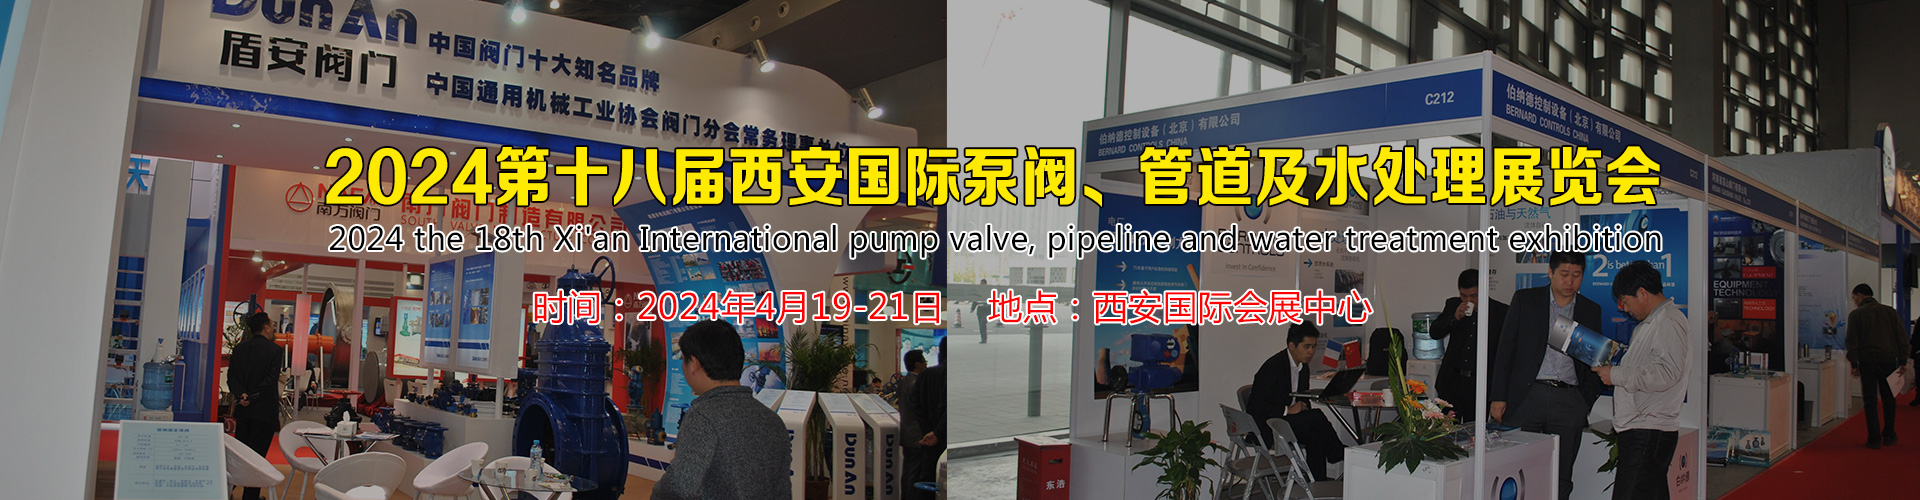 2024第十八届西安国际泵阀、管道及水处理展览会